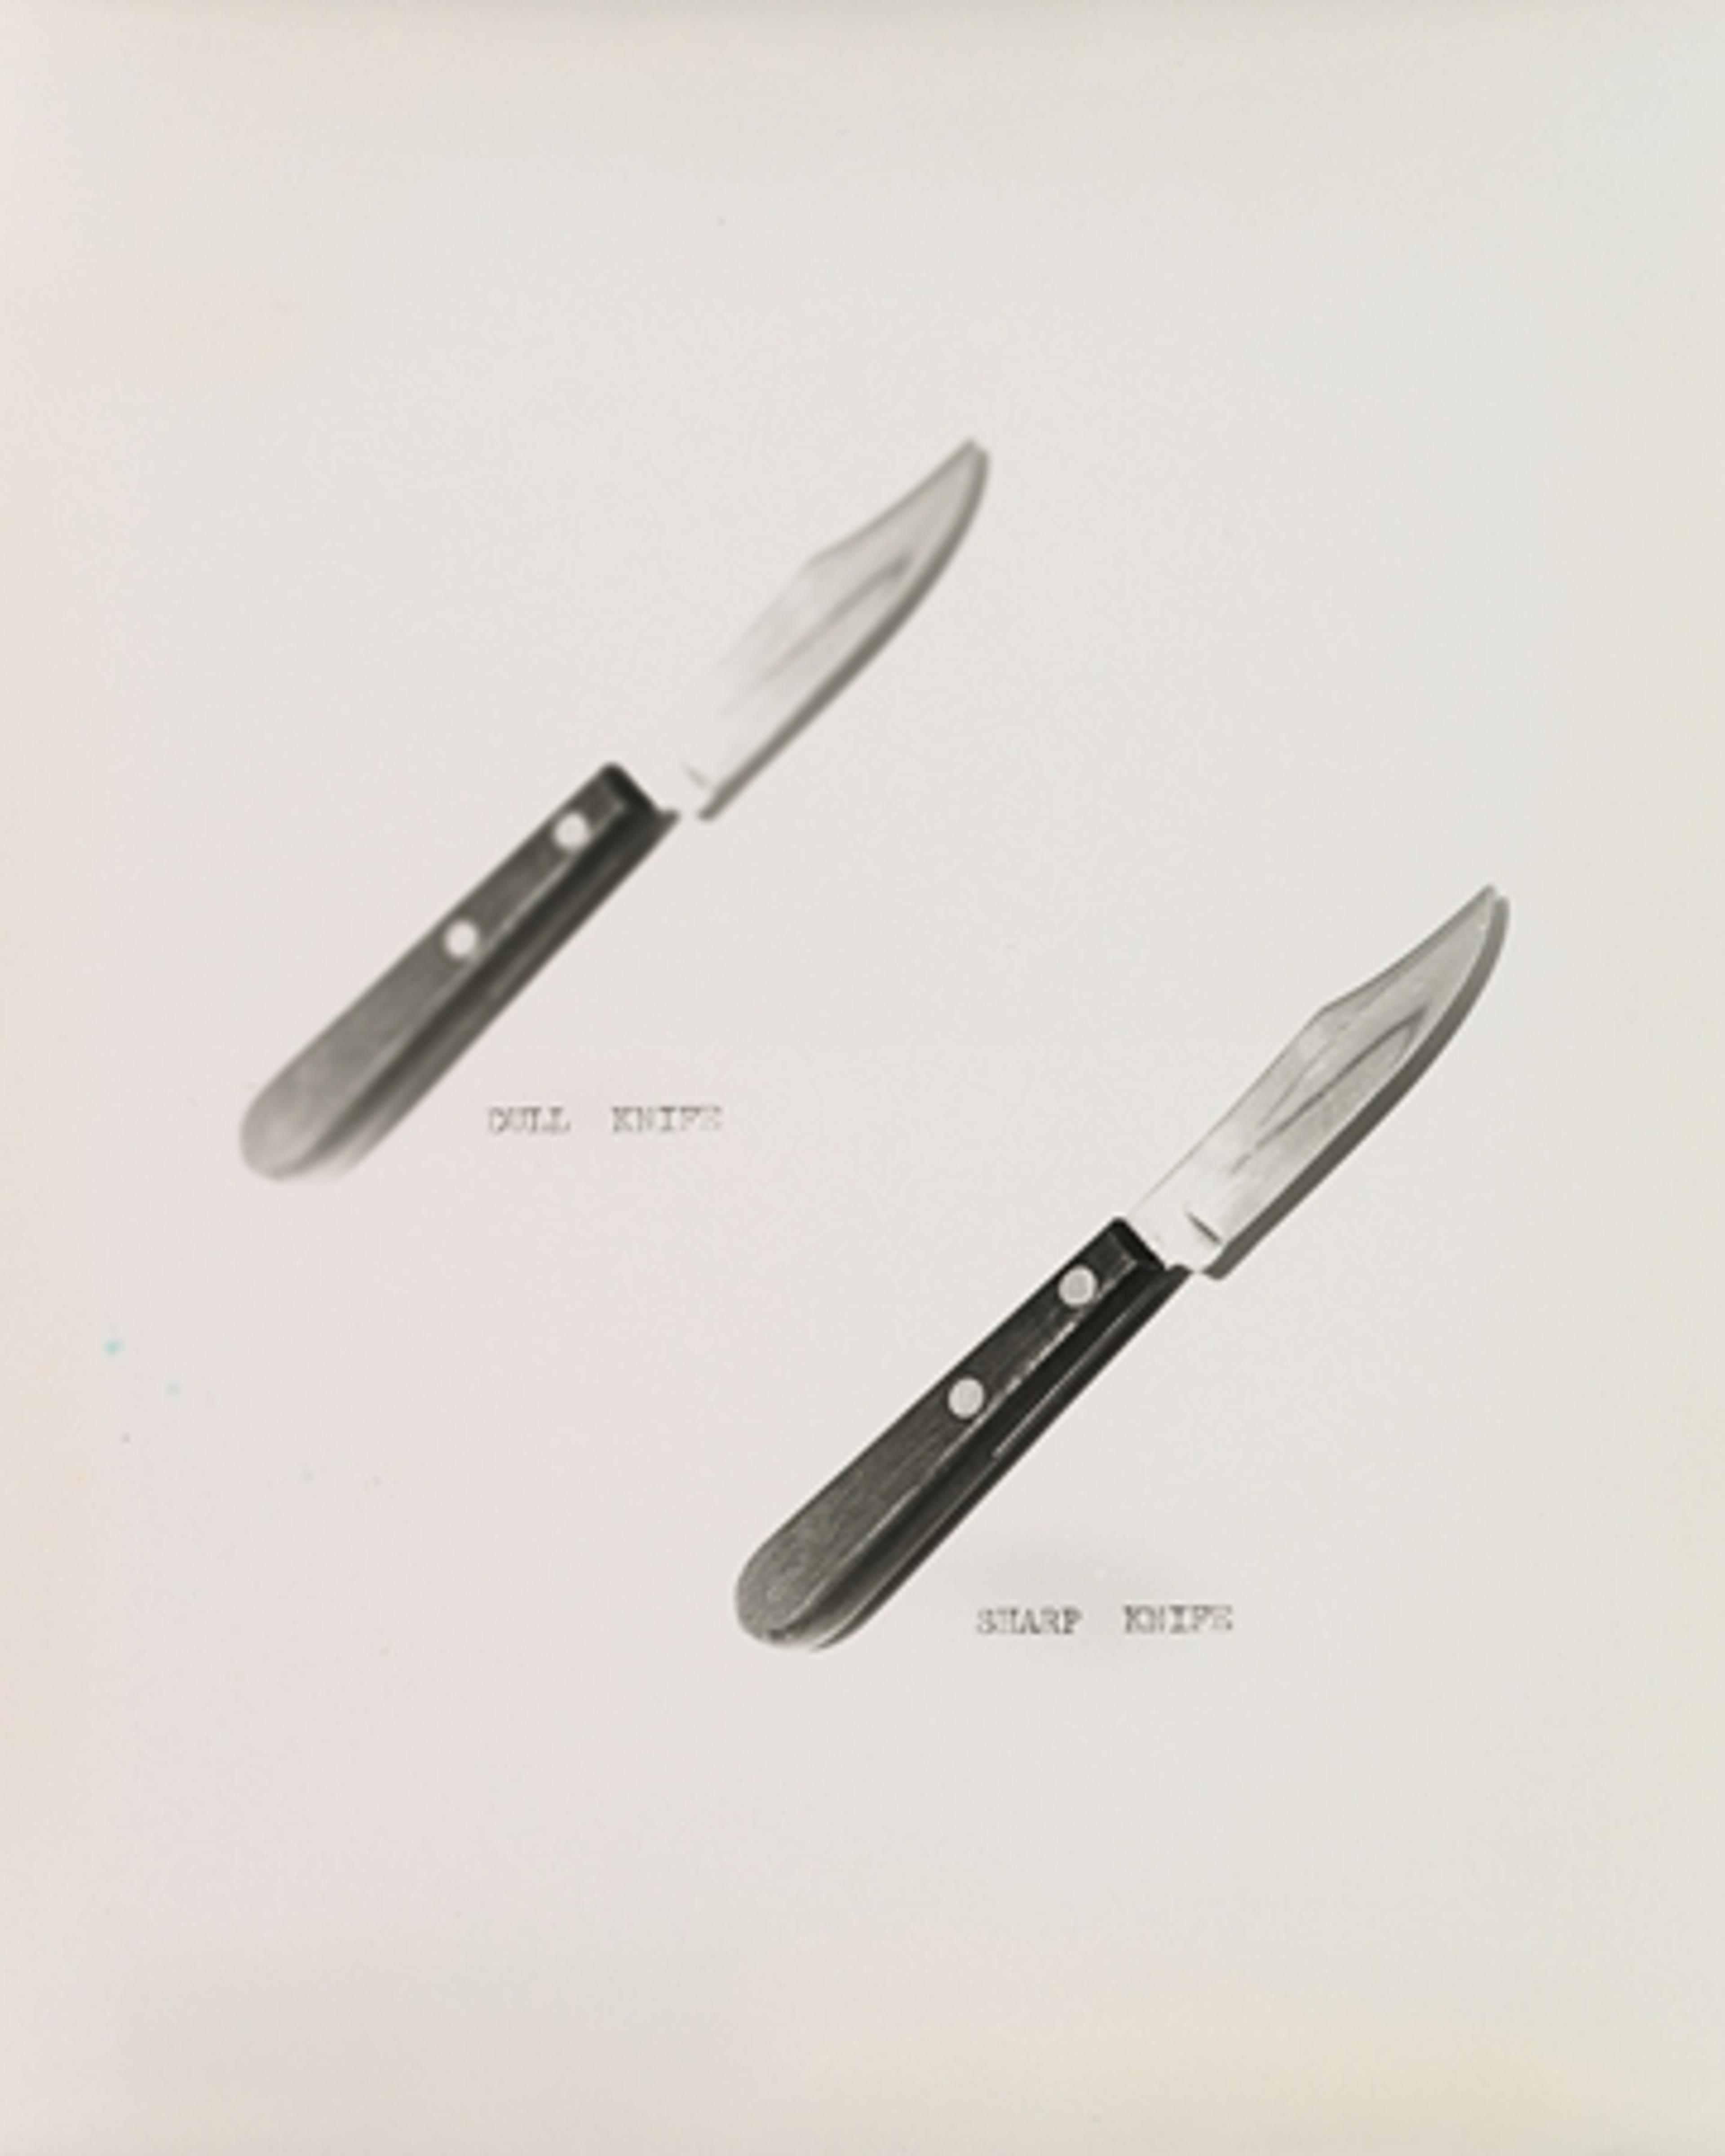 Dull Knife / Sharp Knife